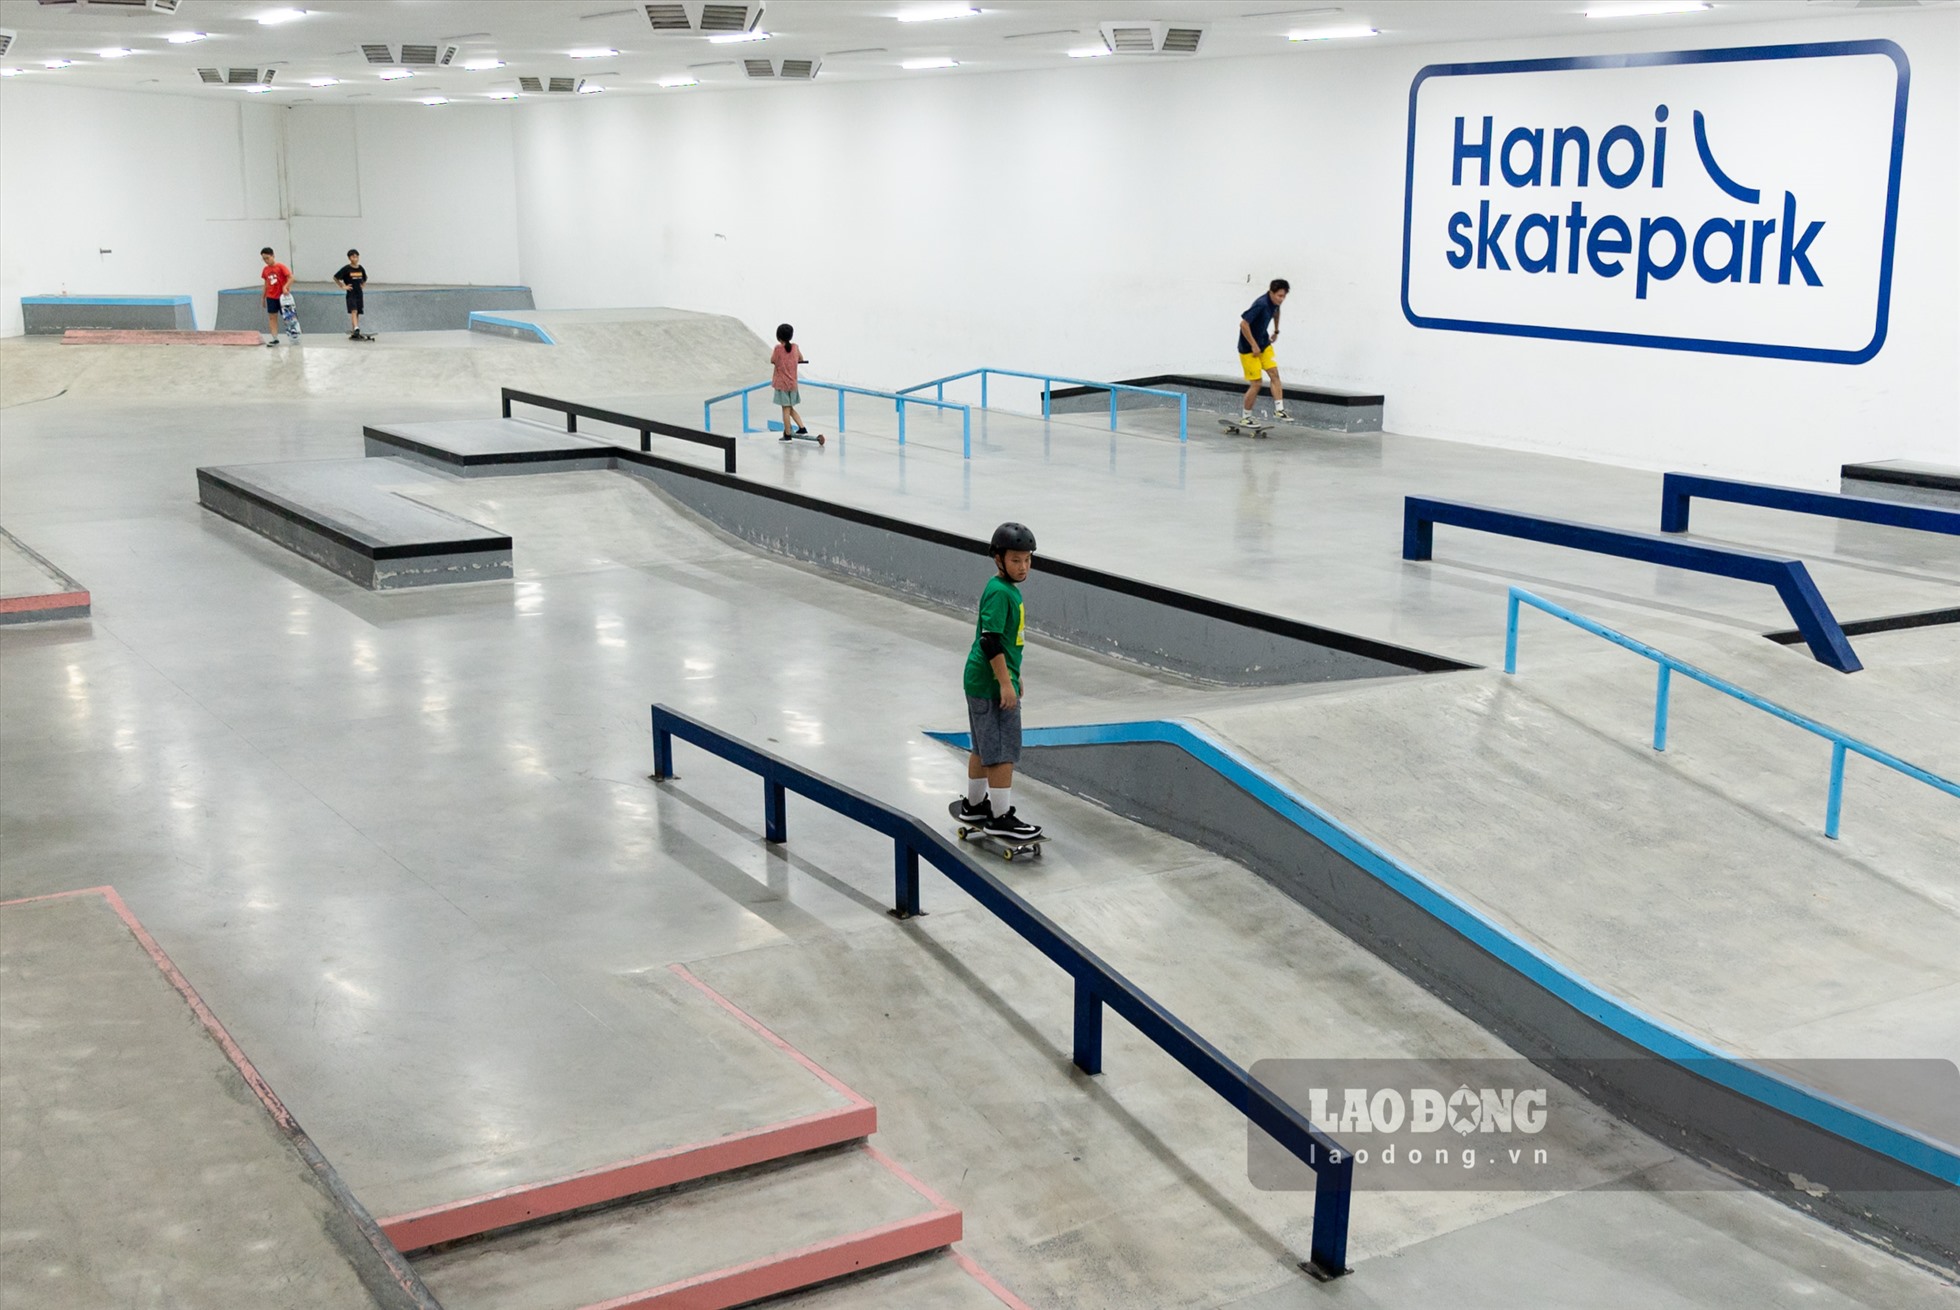 Sân trượt Hanoi Skatepark rộng 1500m2 được thiết kế bởi California skatepark - đơn vị thiết kế sân độc quyền cho giải trượt ván SLS (Street League) và Olympic Tokyo 2021.